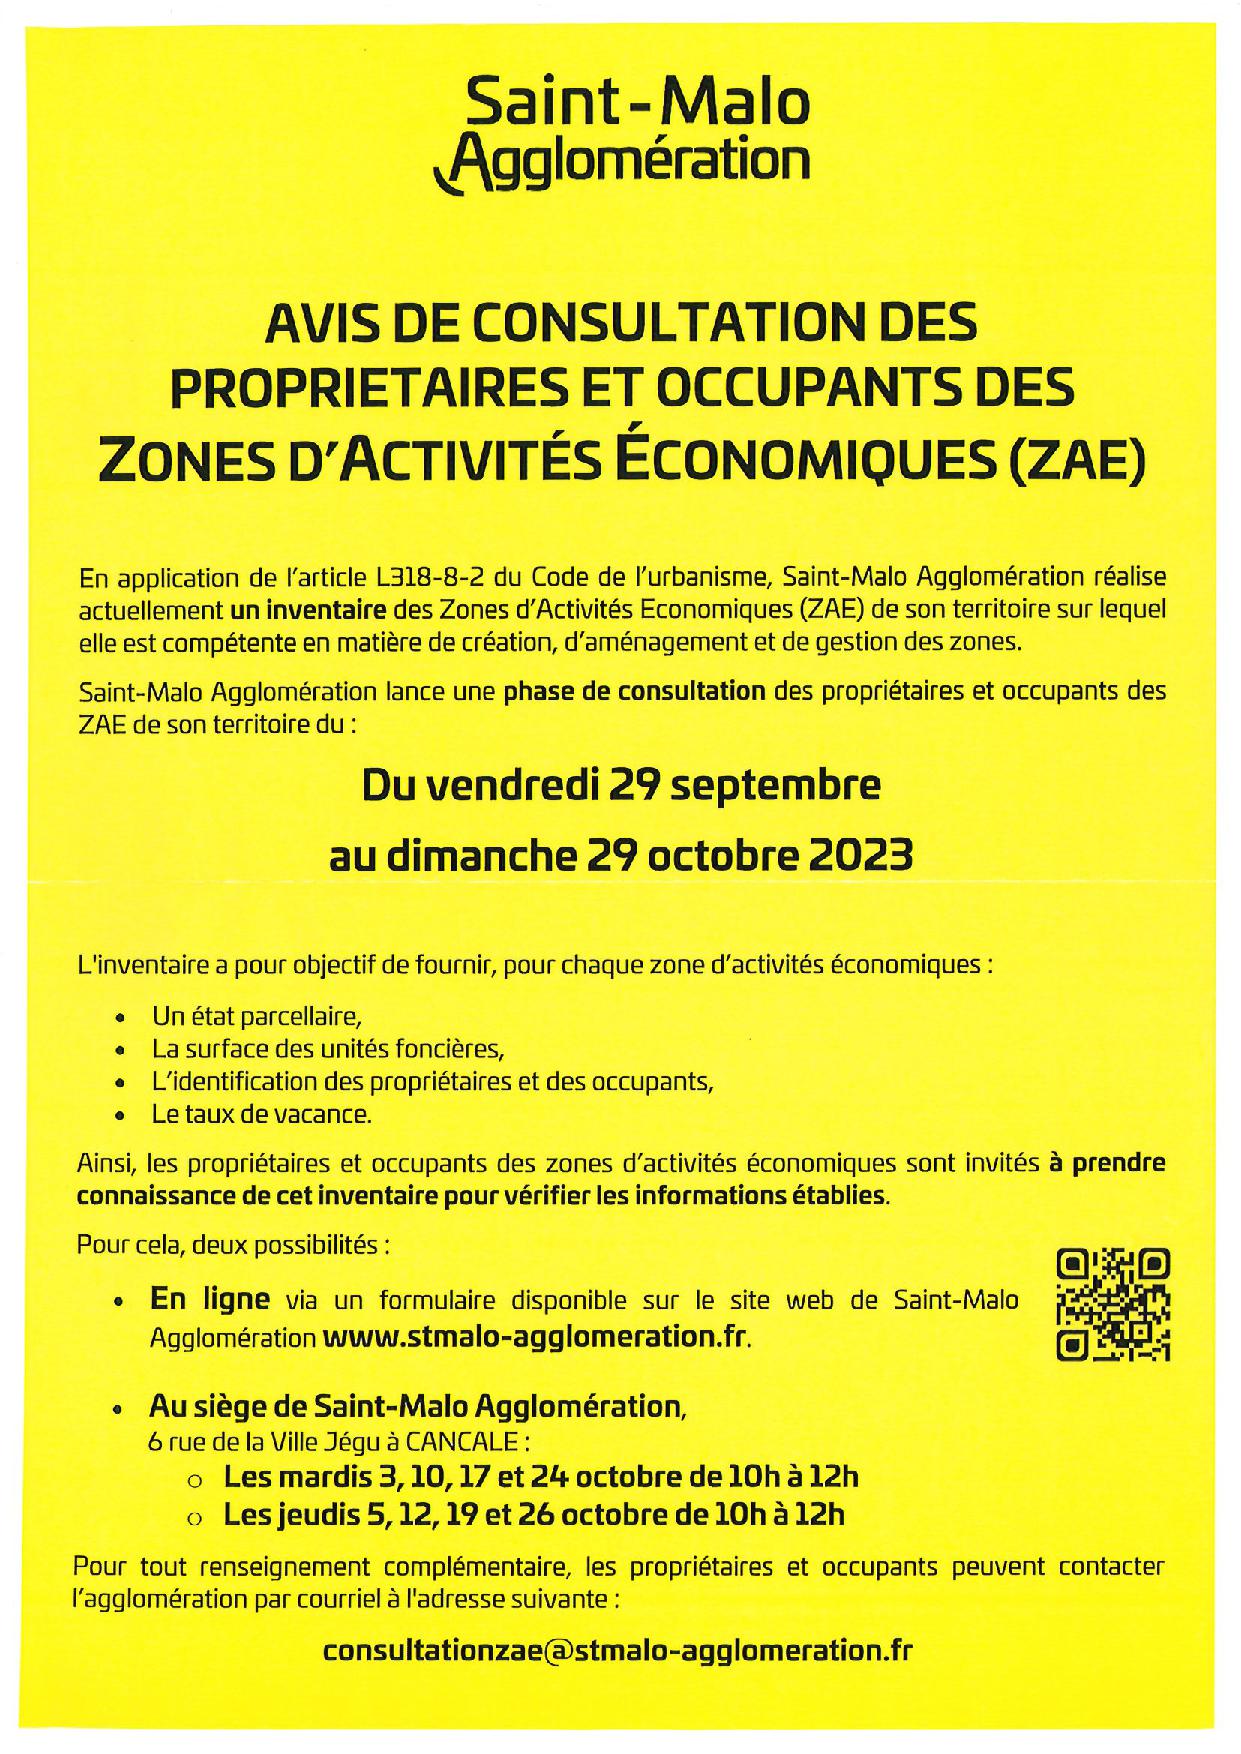 Avis de consultation des propriétaires et occupants des zones d’activités économiques(ZAE)